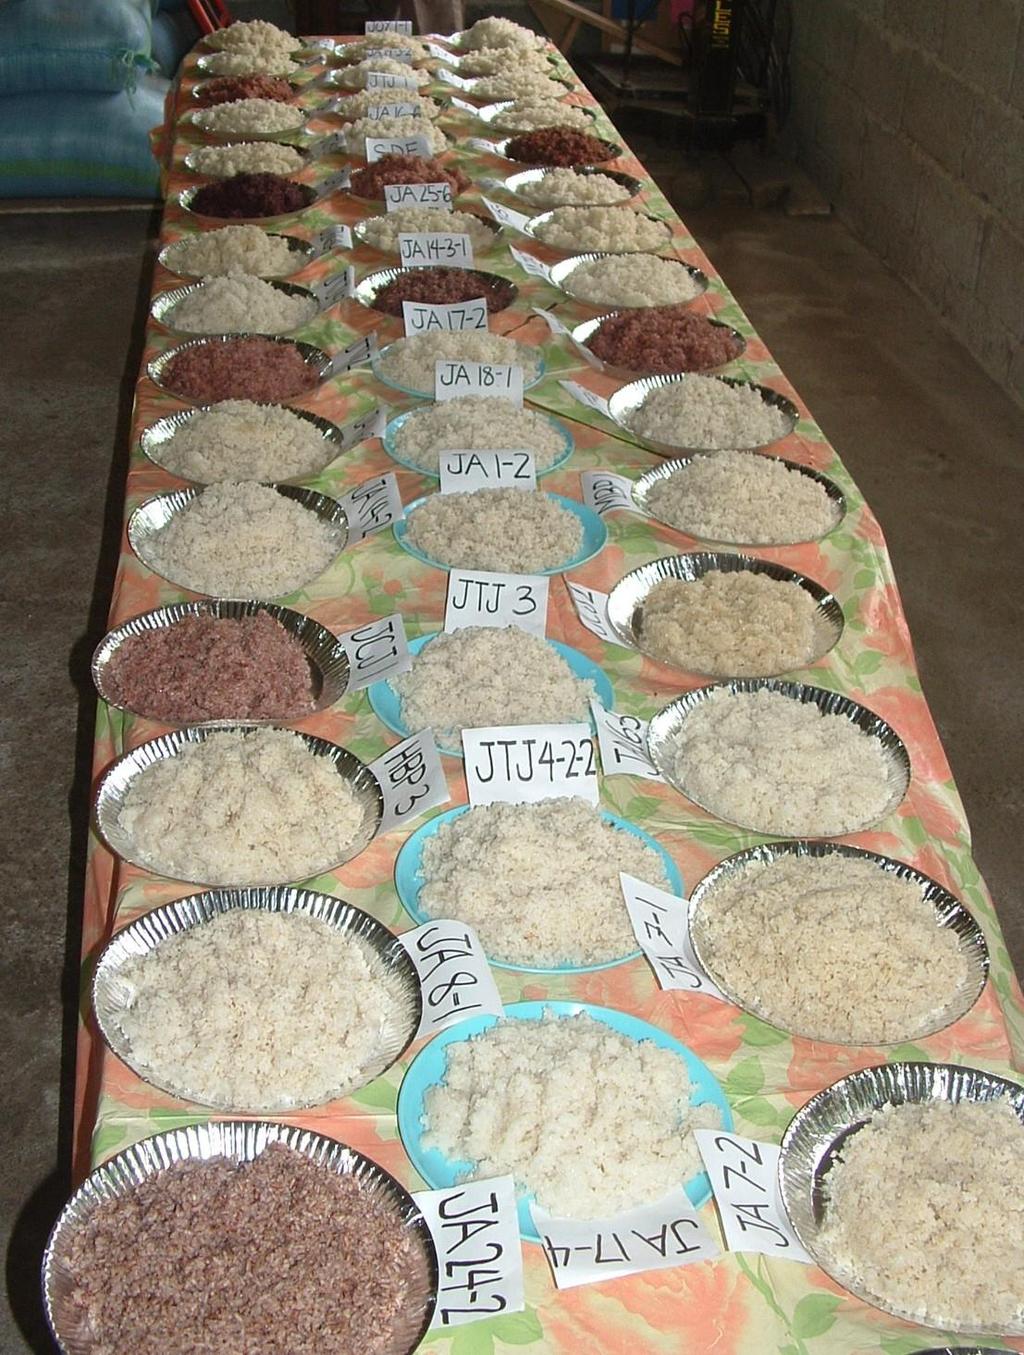 300 Sorten Reis haben die Bauern von Agro-Eco gezüchtet!